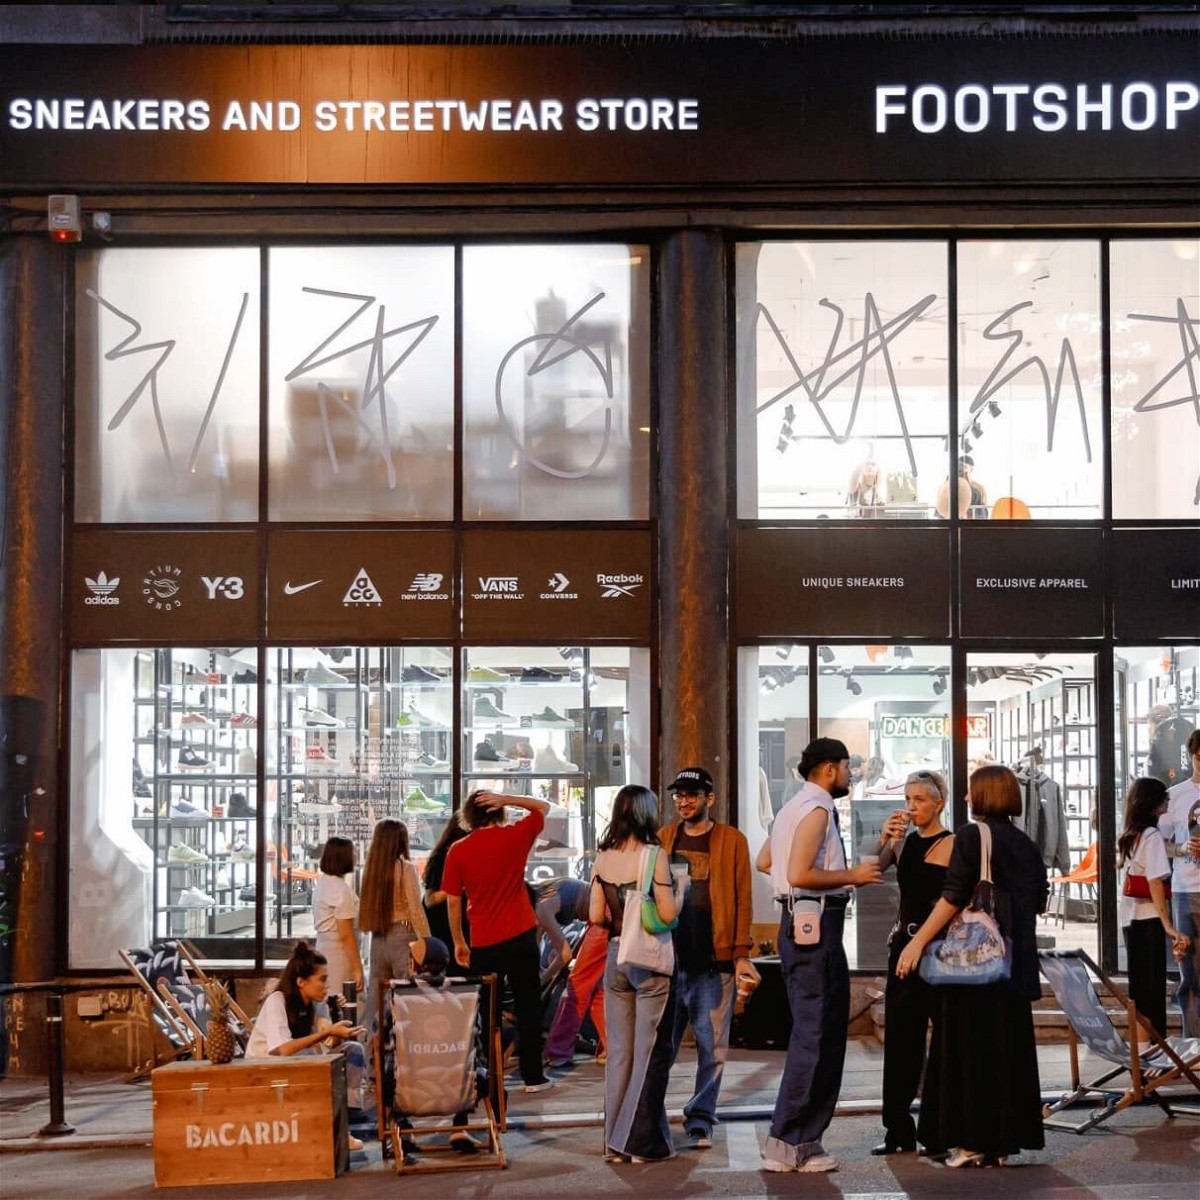 Explorăm Footshop București: Un hub pentru cultura sneaker în România